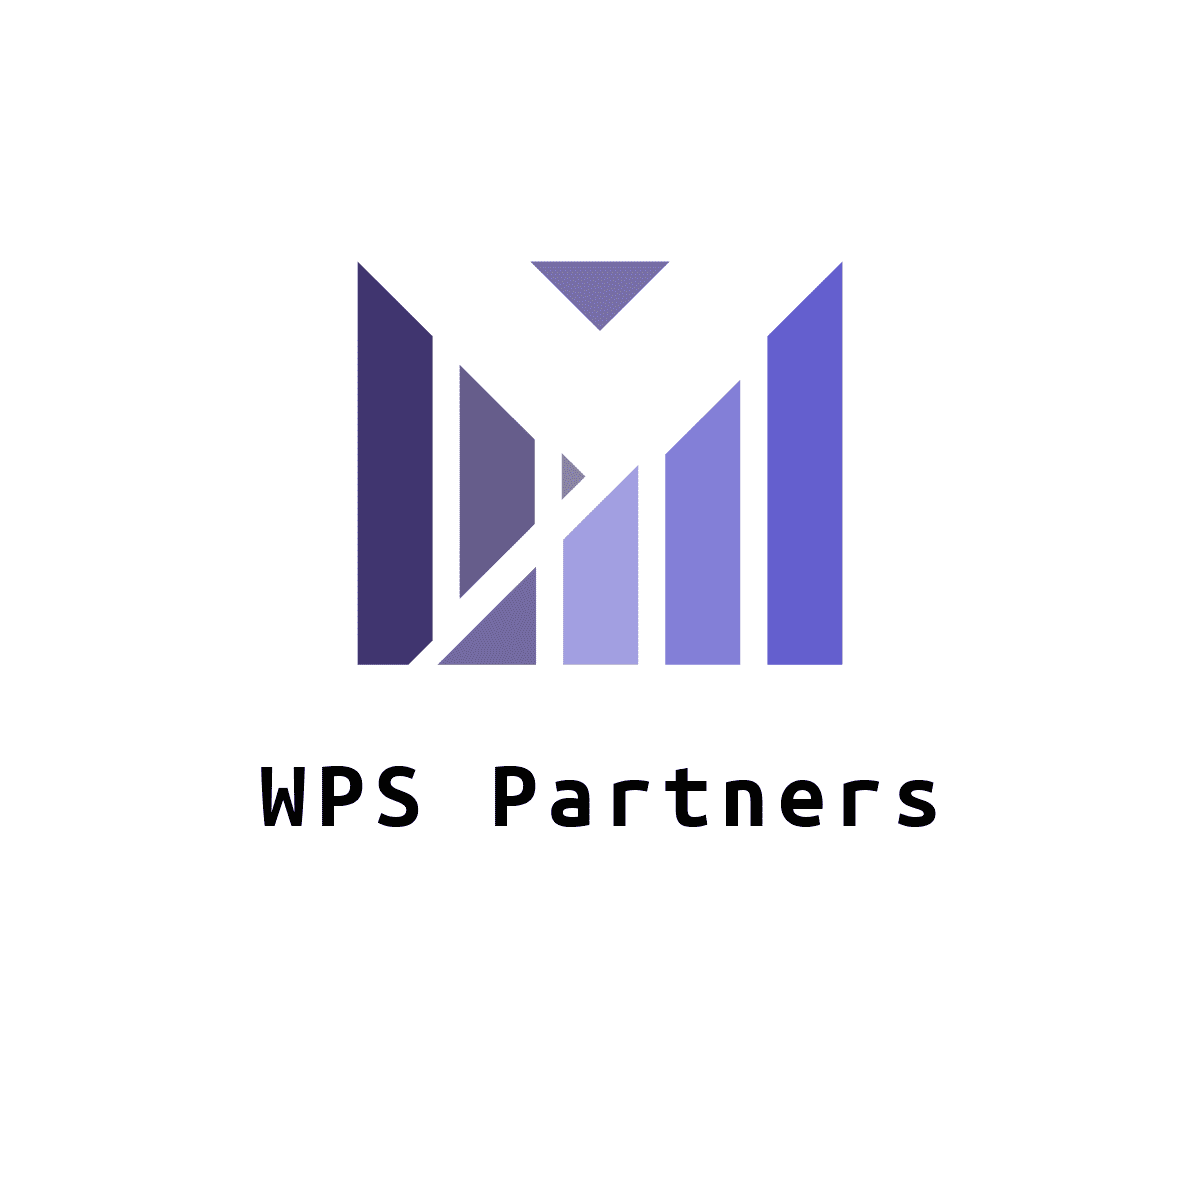 WPS Partners